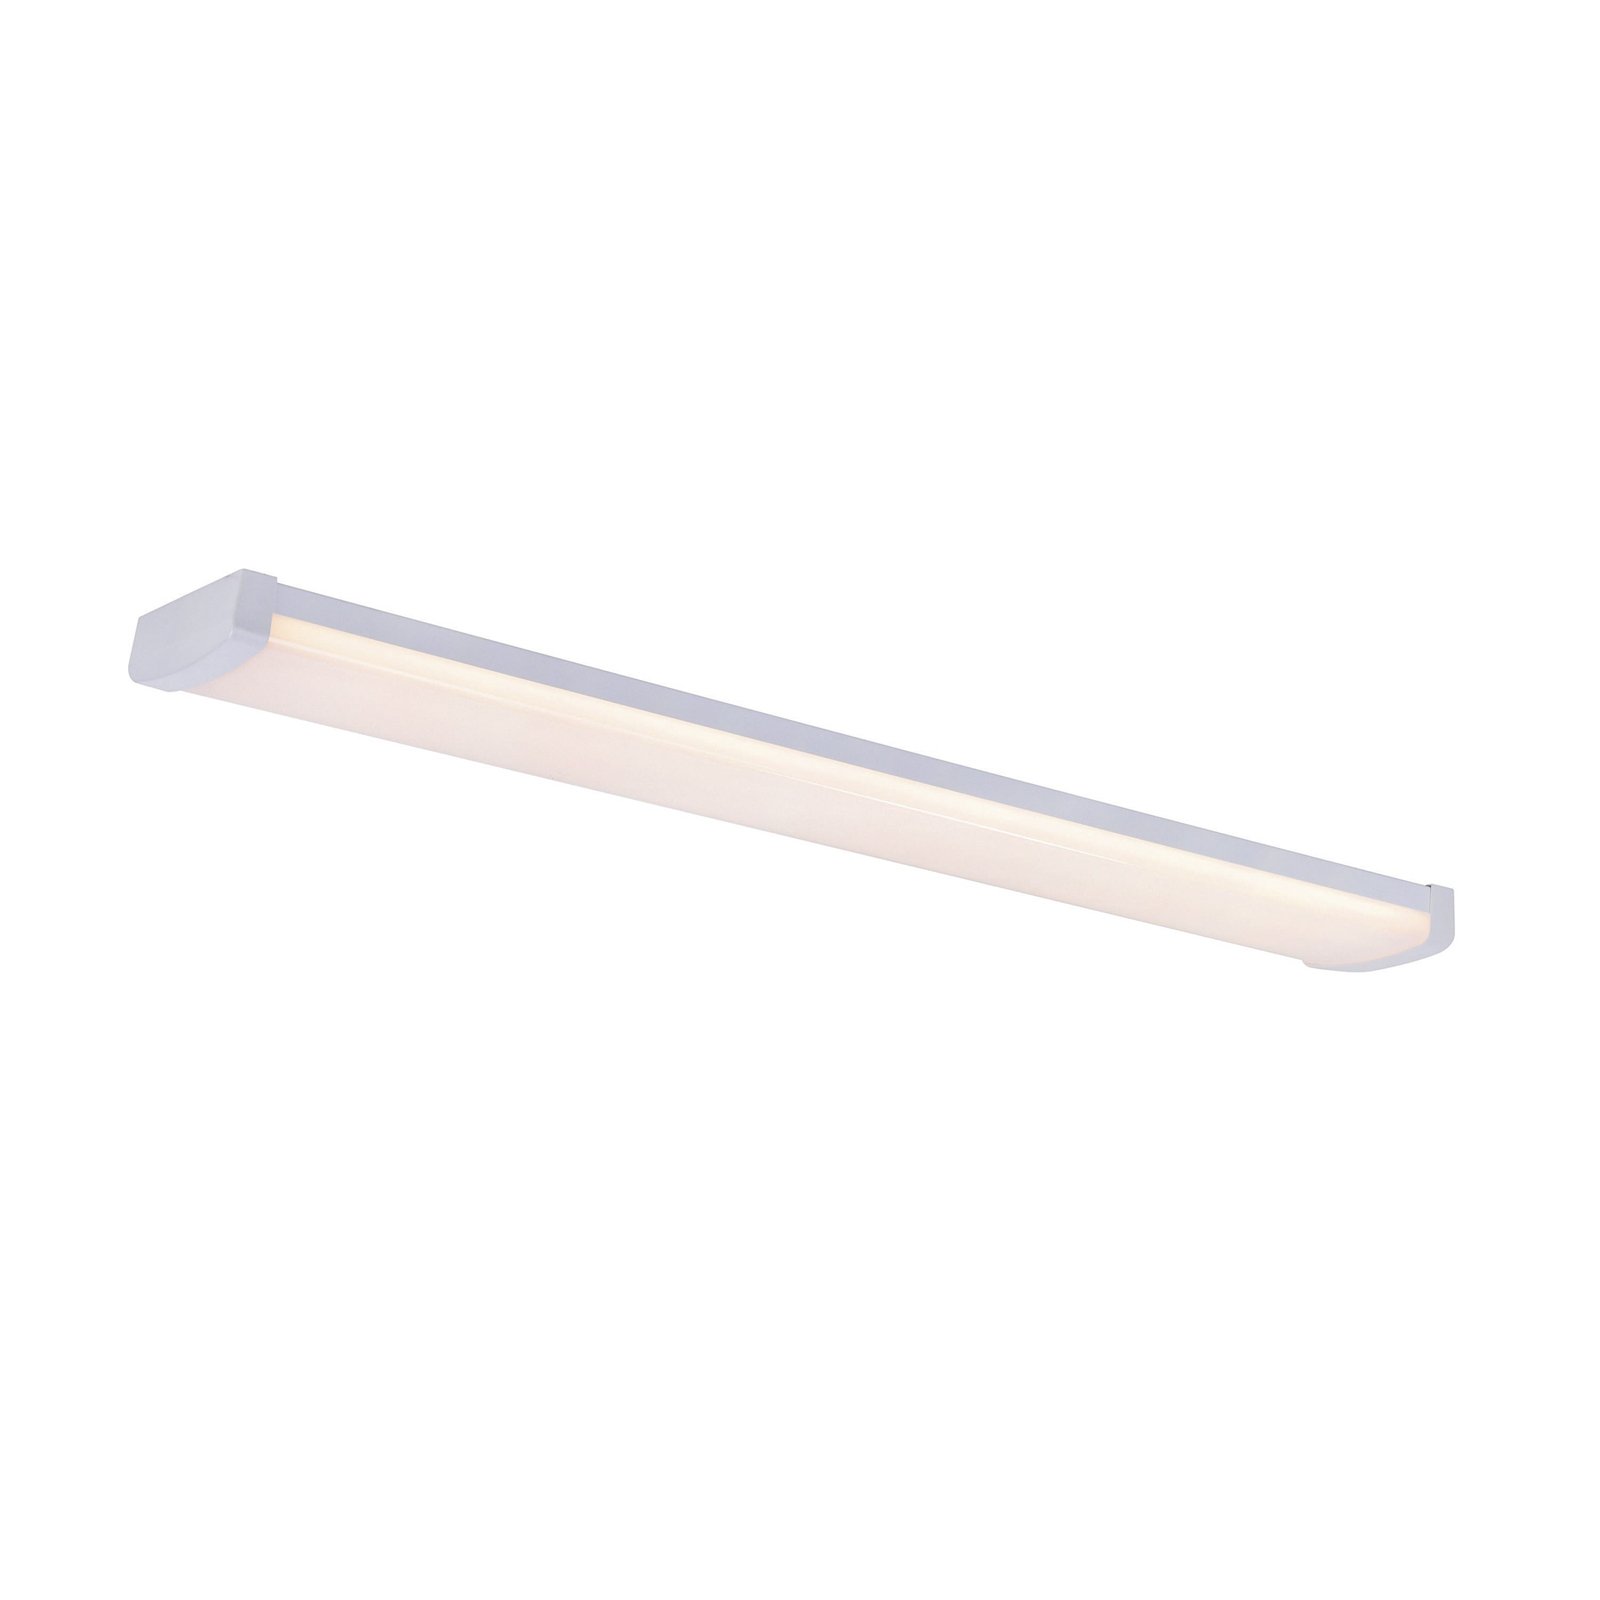 Svetelný pás LED Wilmington, dĺžka 90,5 cm, biely, plast